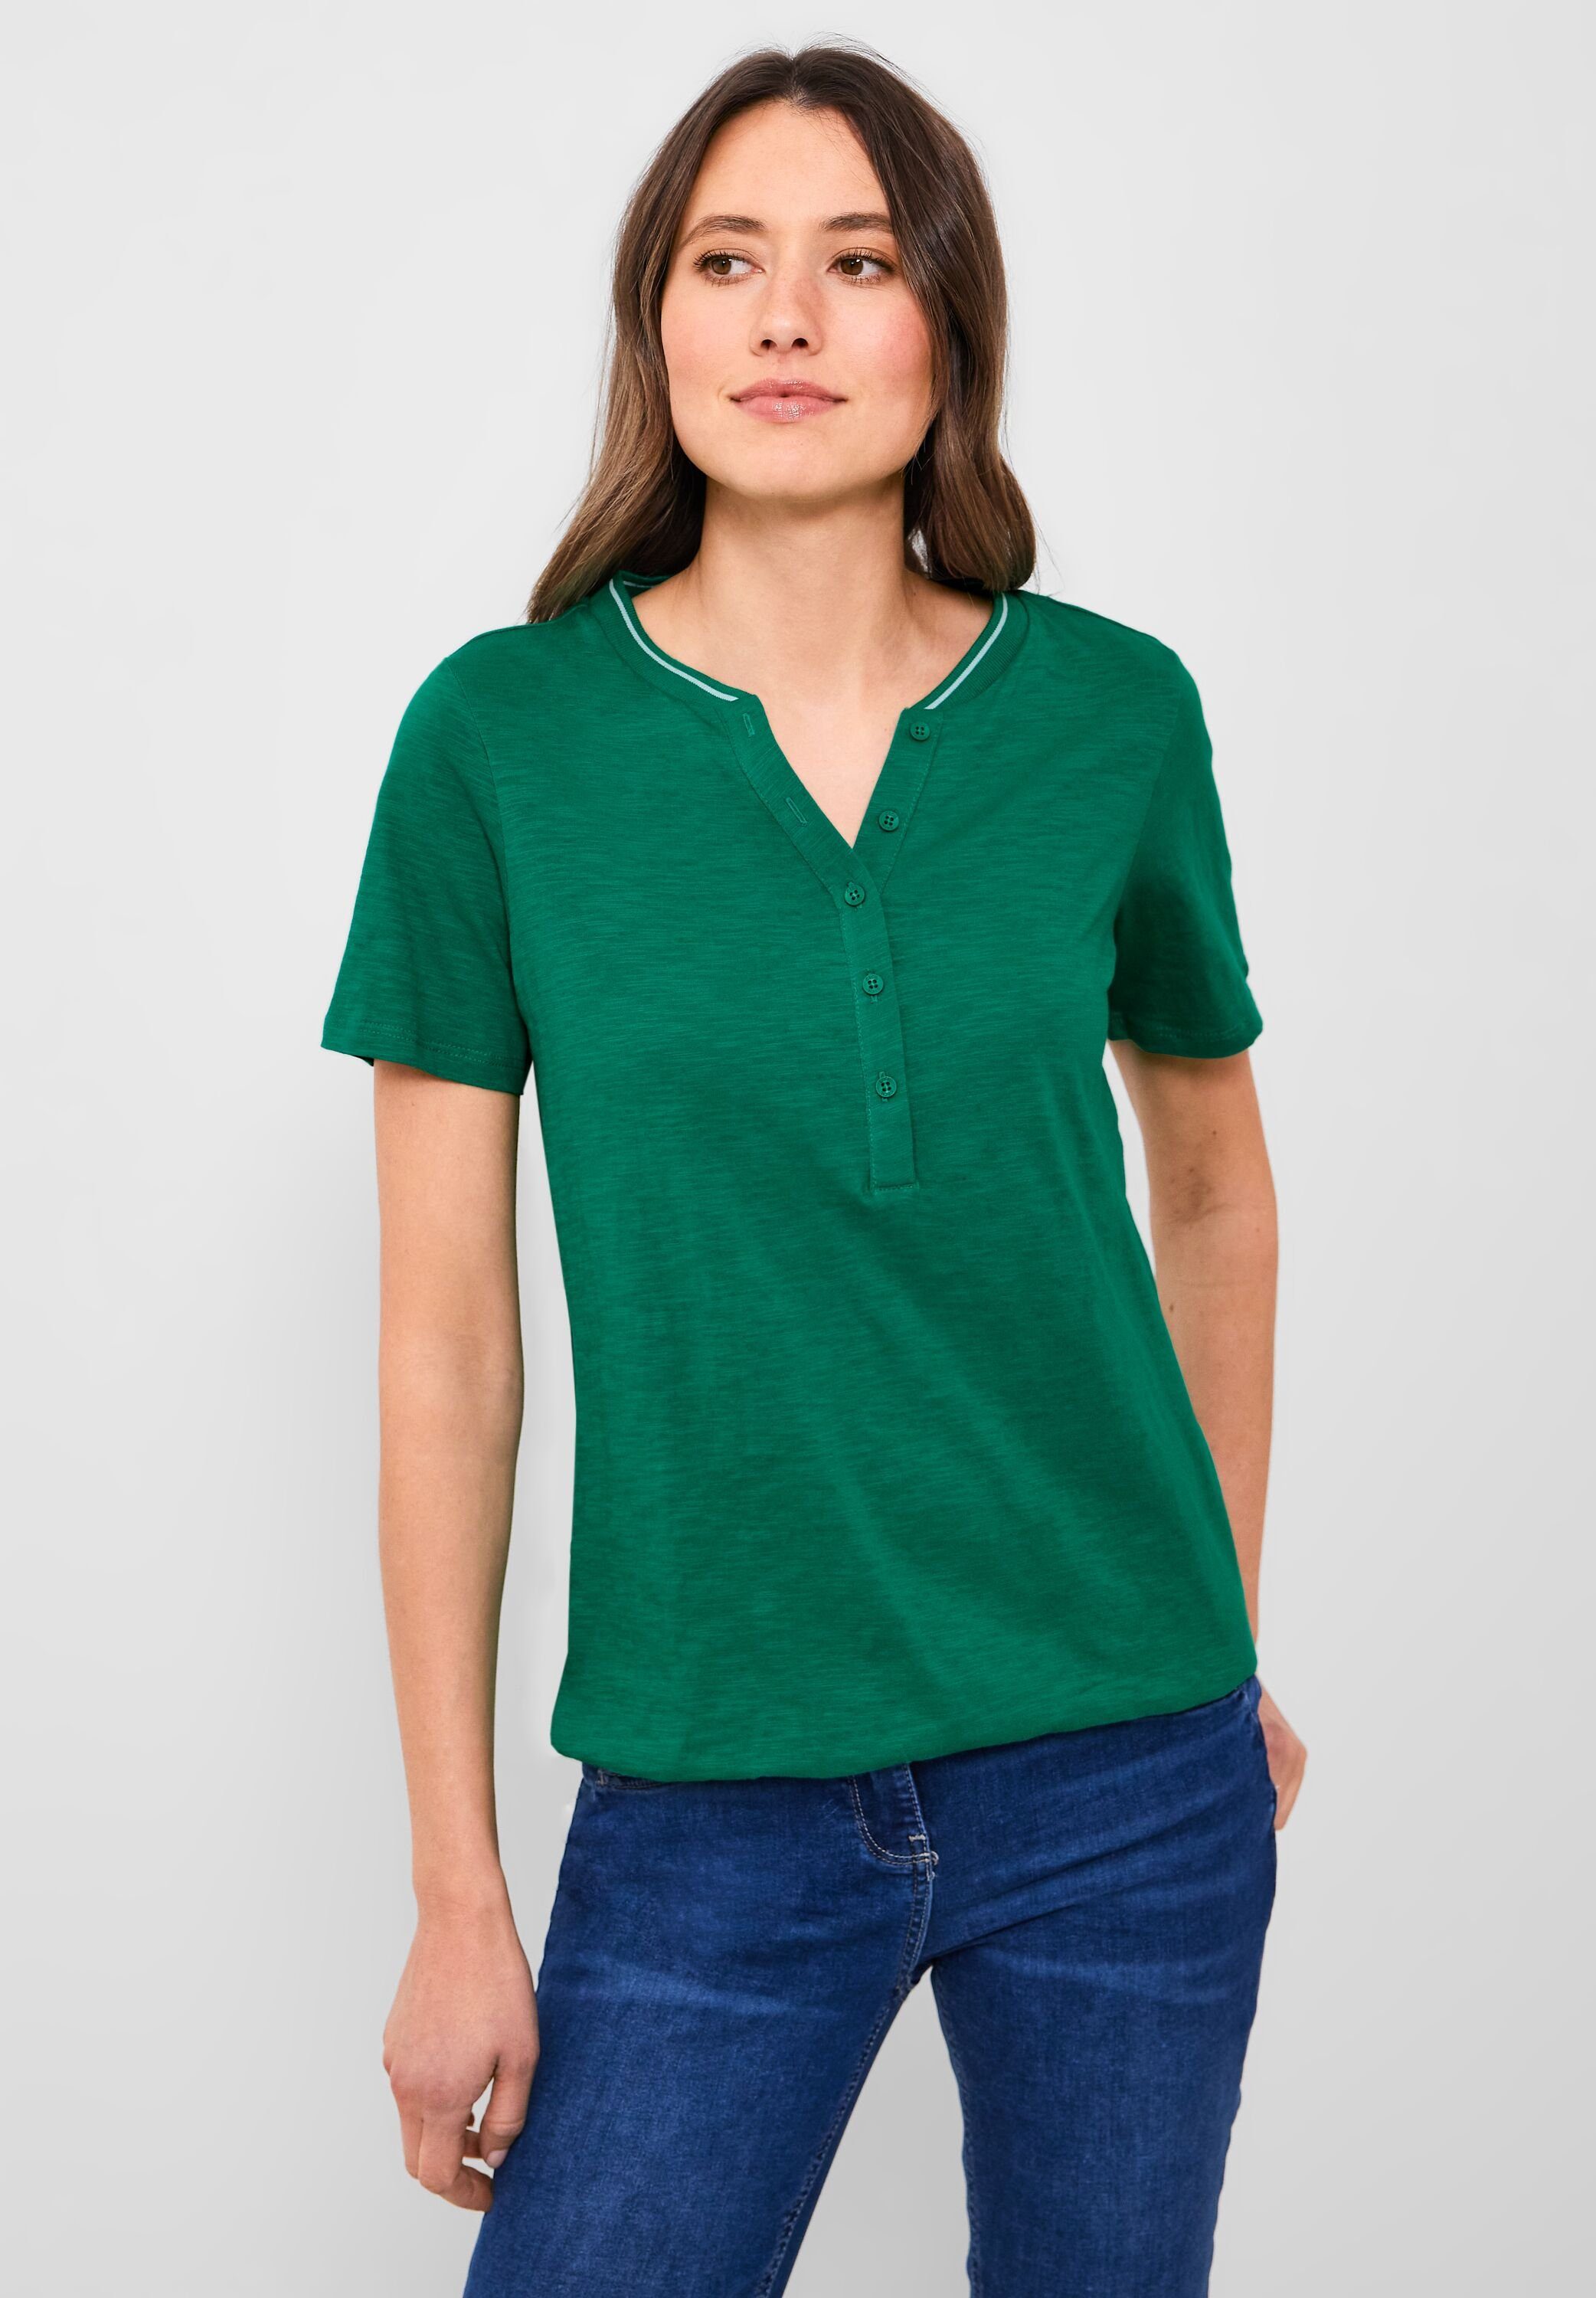 luscious Unifarbe in Cecil green 3/4-Arm-Shirt